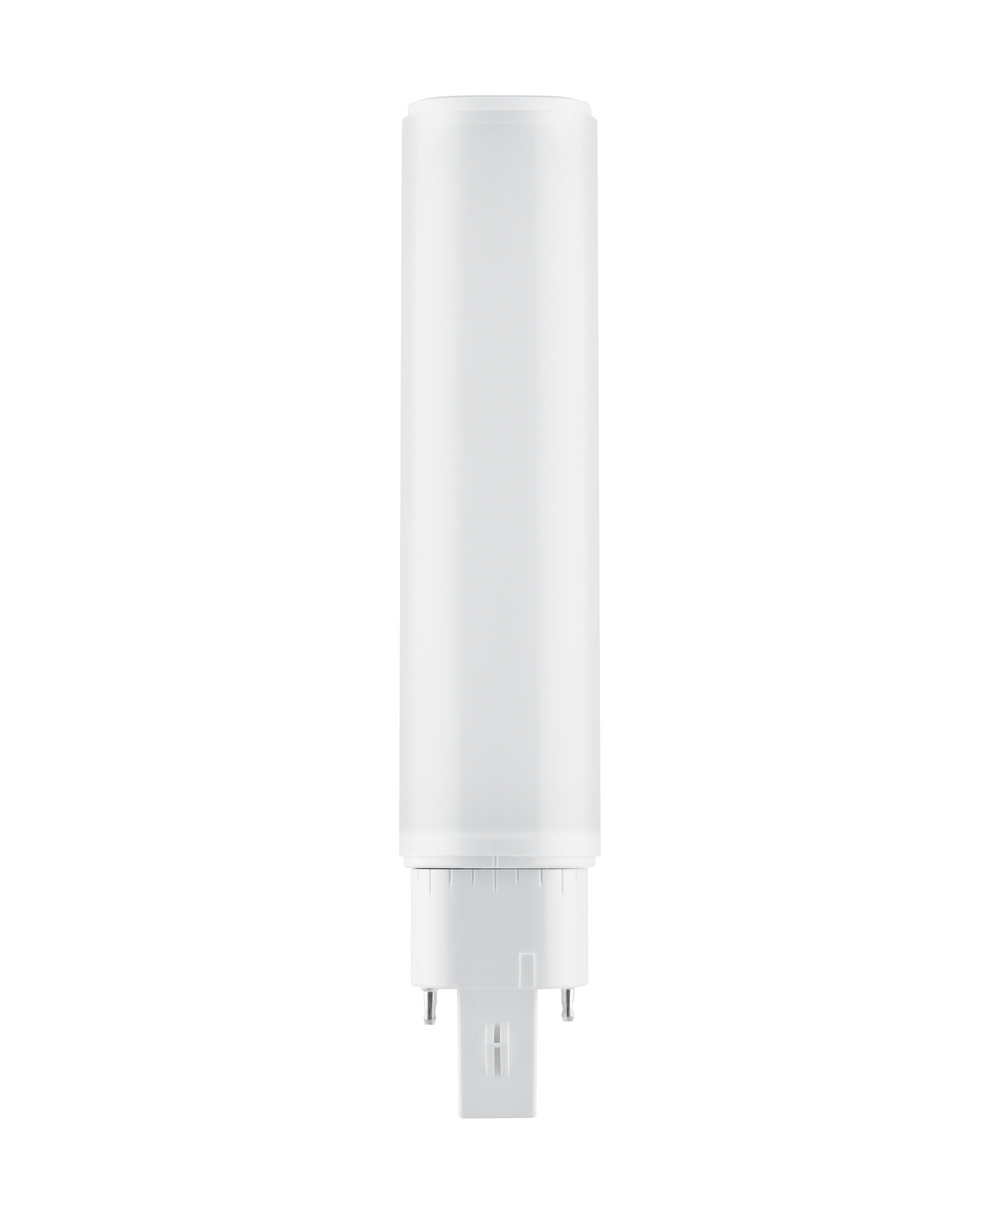 Ledvance LED lamp Osram DULUX D/E LED HF & AC Mains 10 W/3000 K – replacement for KLLNI 26 W